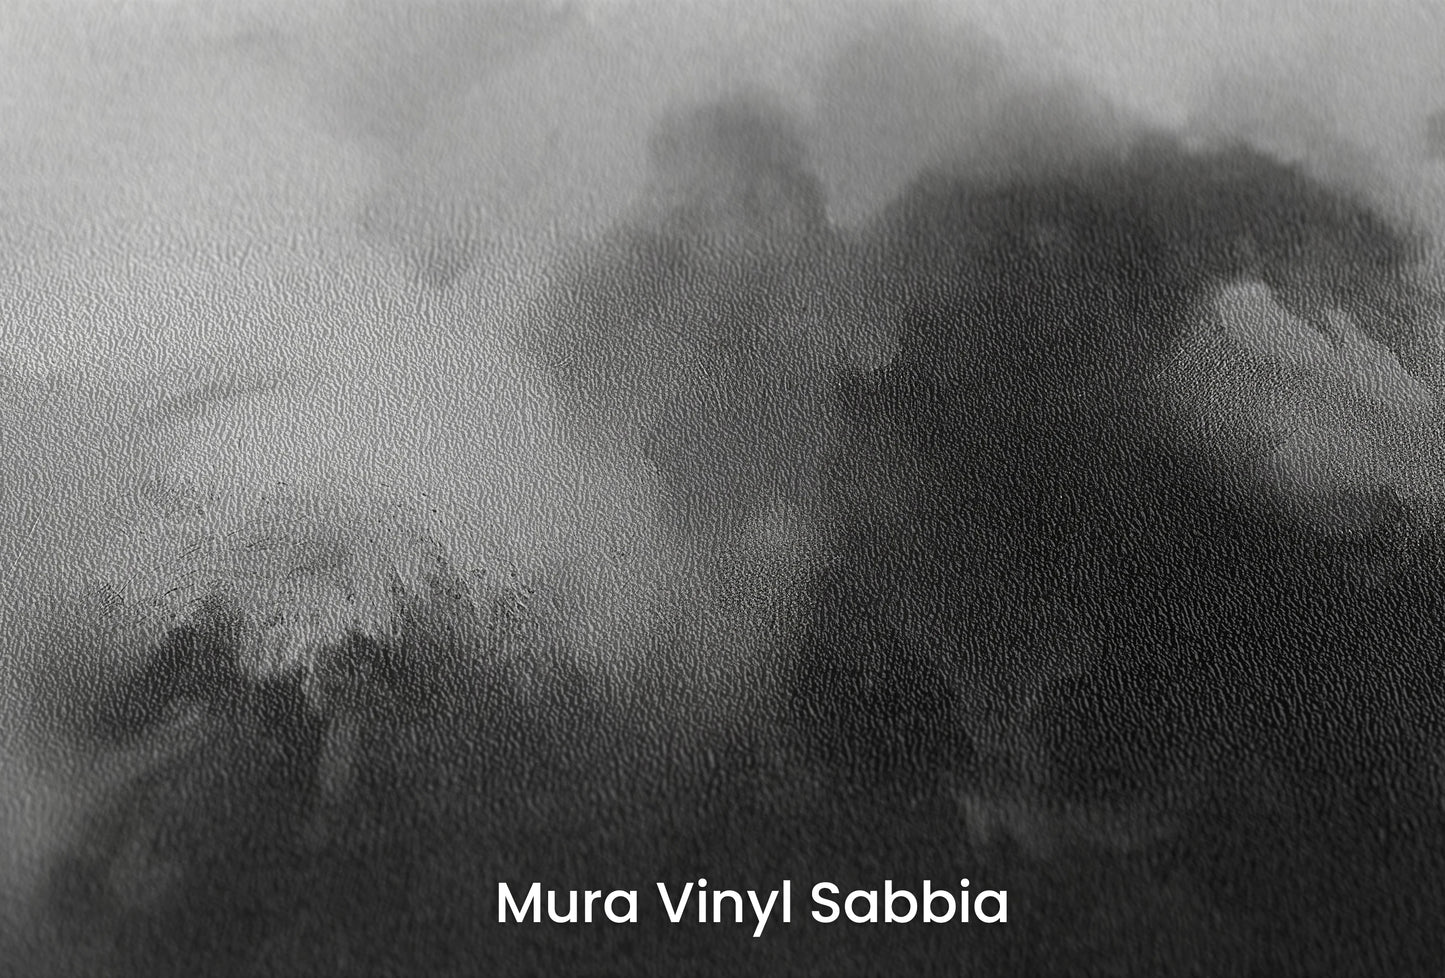 Zbliżenie na artystyczną fototapetę o nazwie Brooding Skies na podłożu Mura Vinyl Sabbia struktura grubego ziarna piasku.